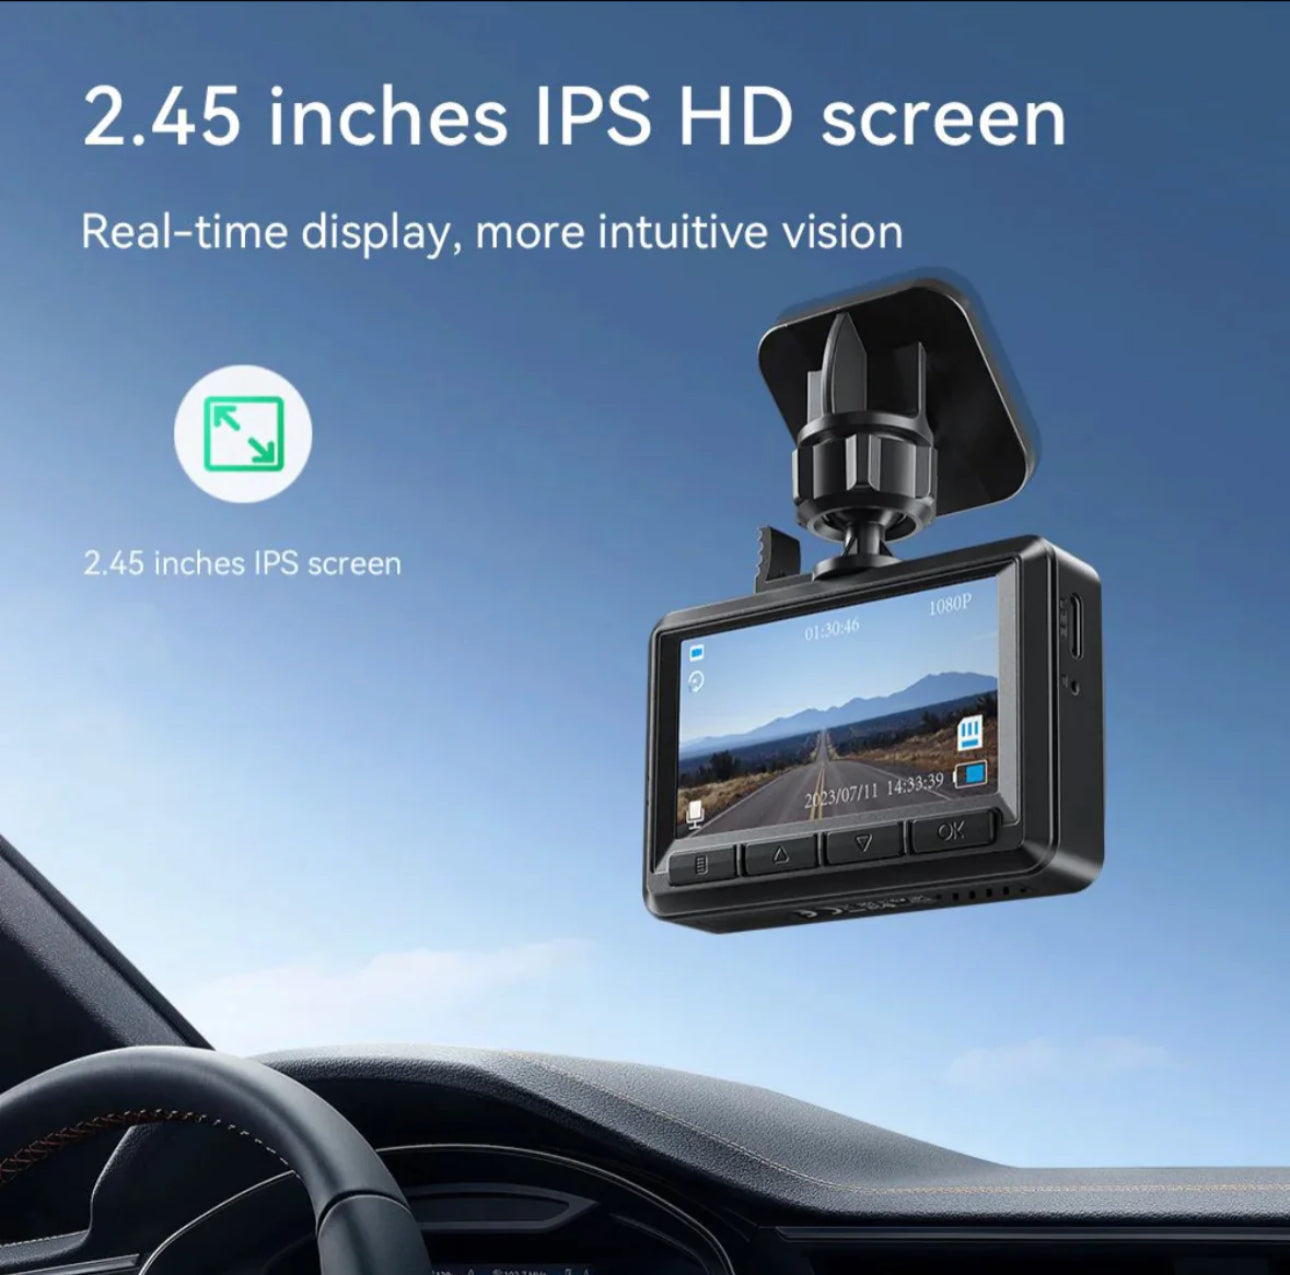 Hoco داش كام السيارة المزدوج 1080 بكسل مع شاشة عرض + كاميرا الرؤية الخلفية DV3